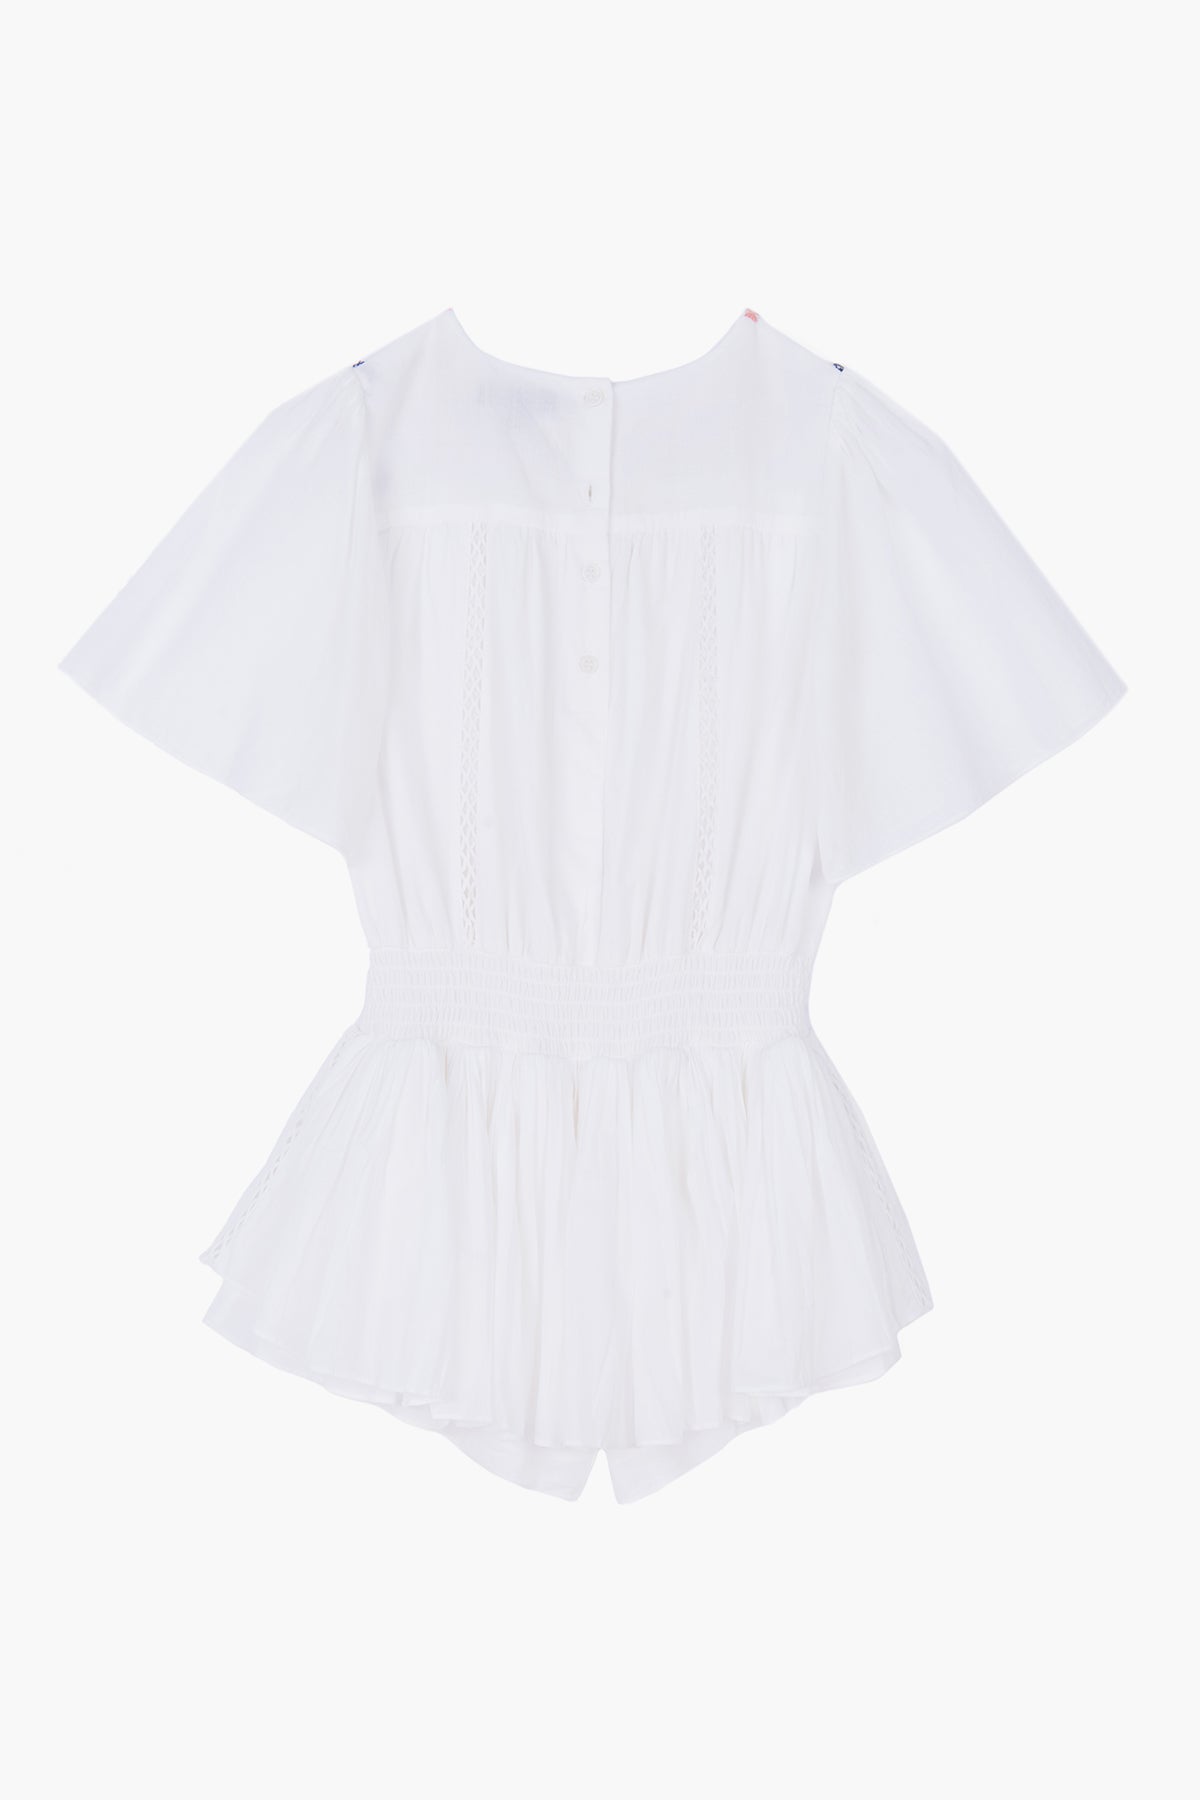 Velveteen Blair Girls Shorts Playsuit (Size 8 left) – Mini Ruby